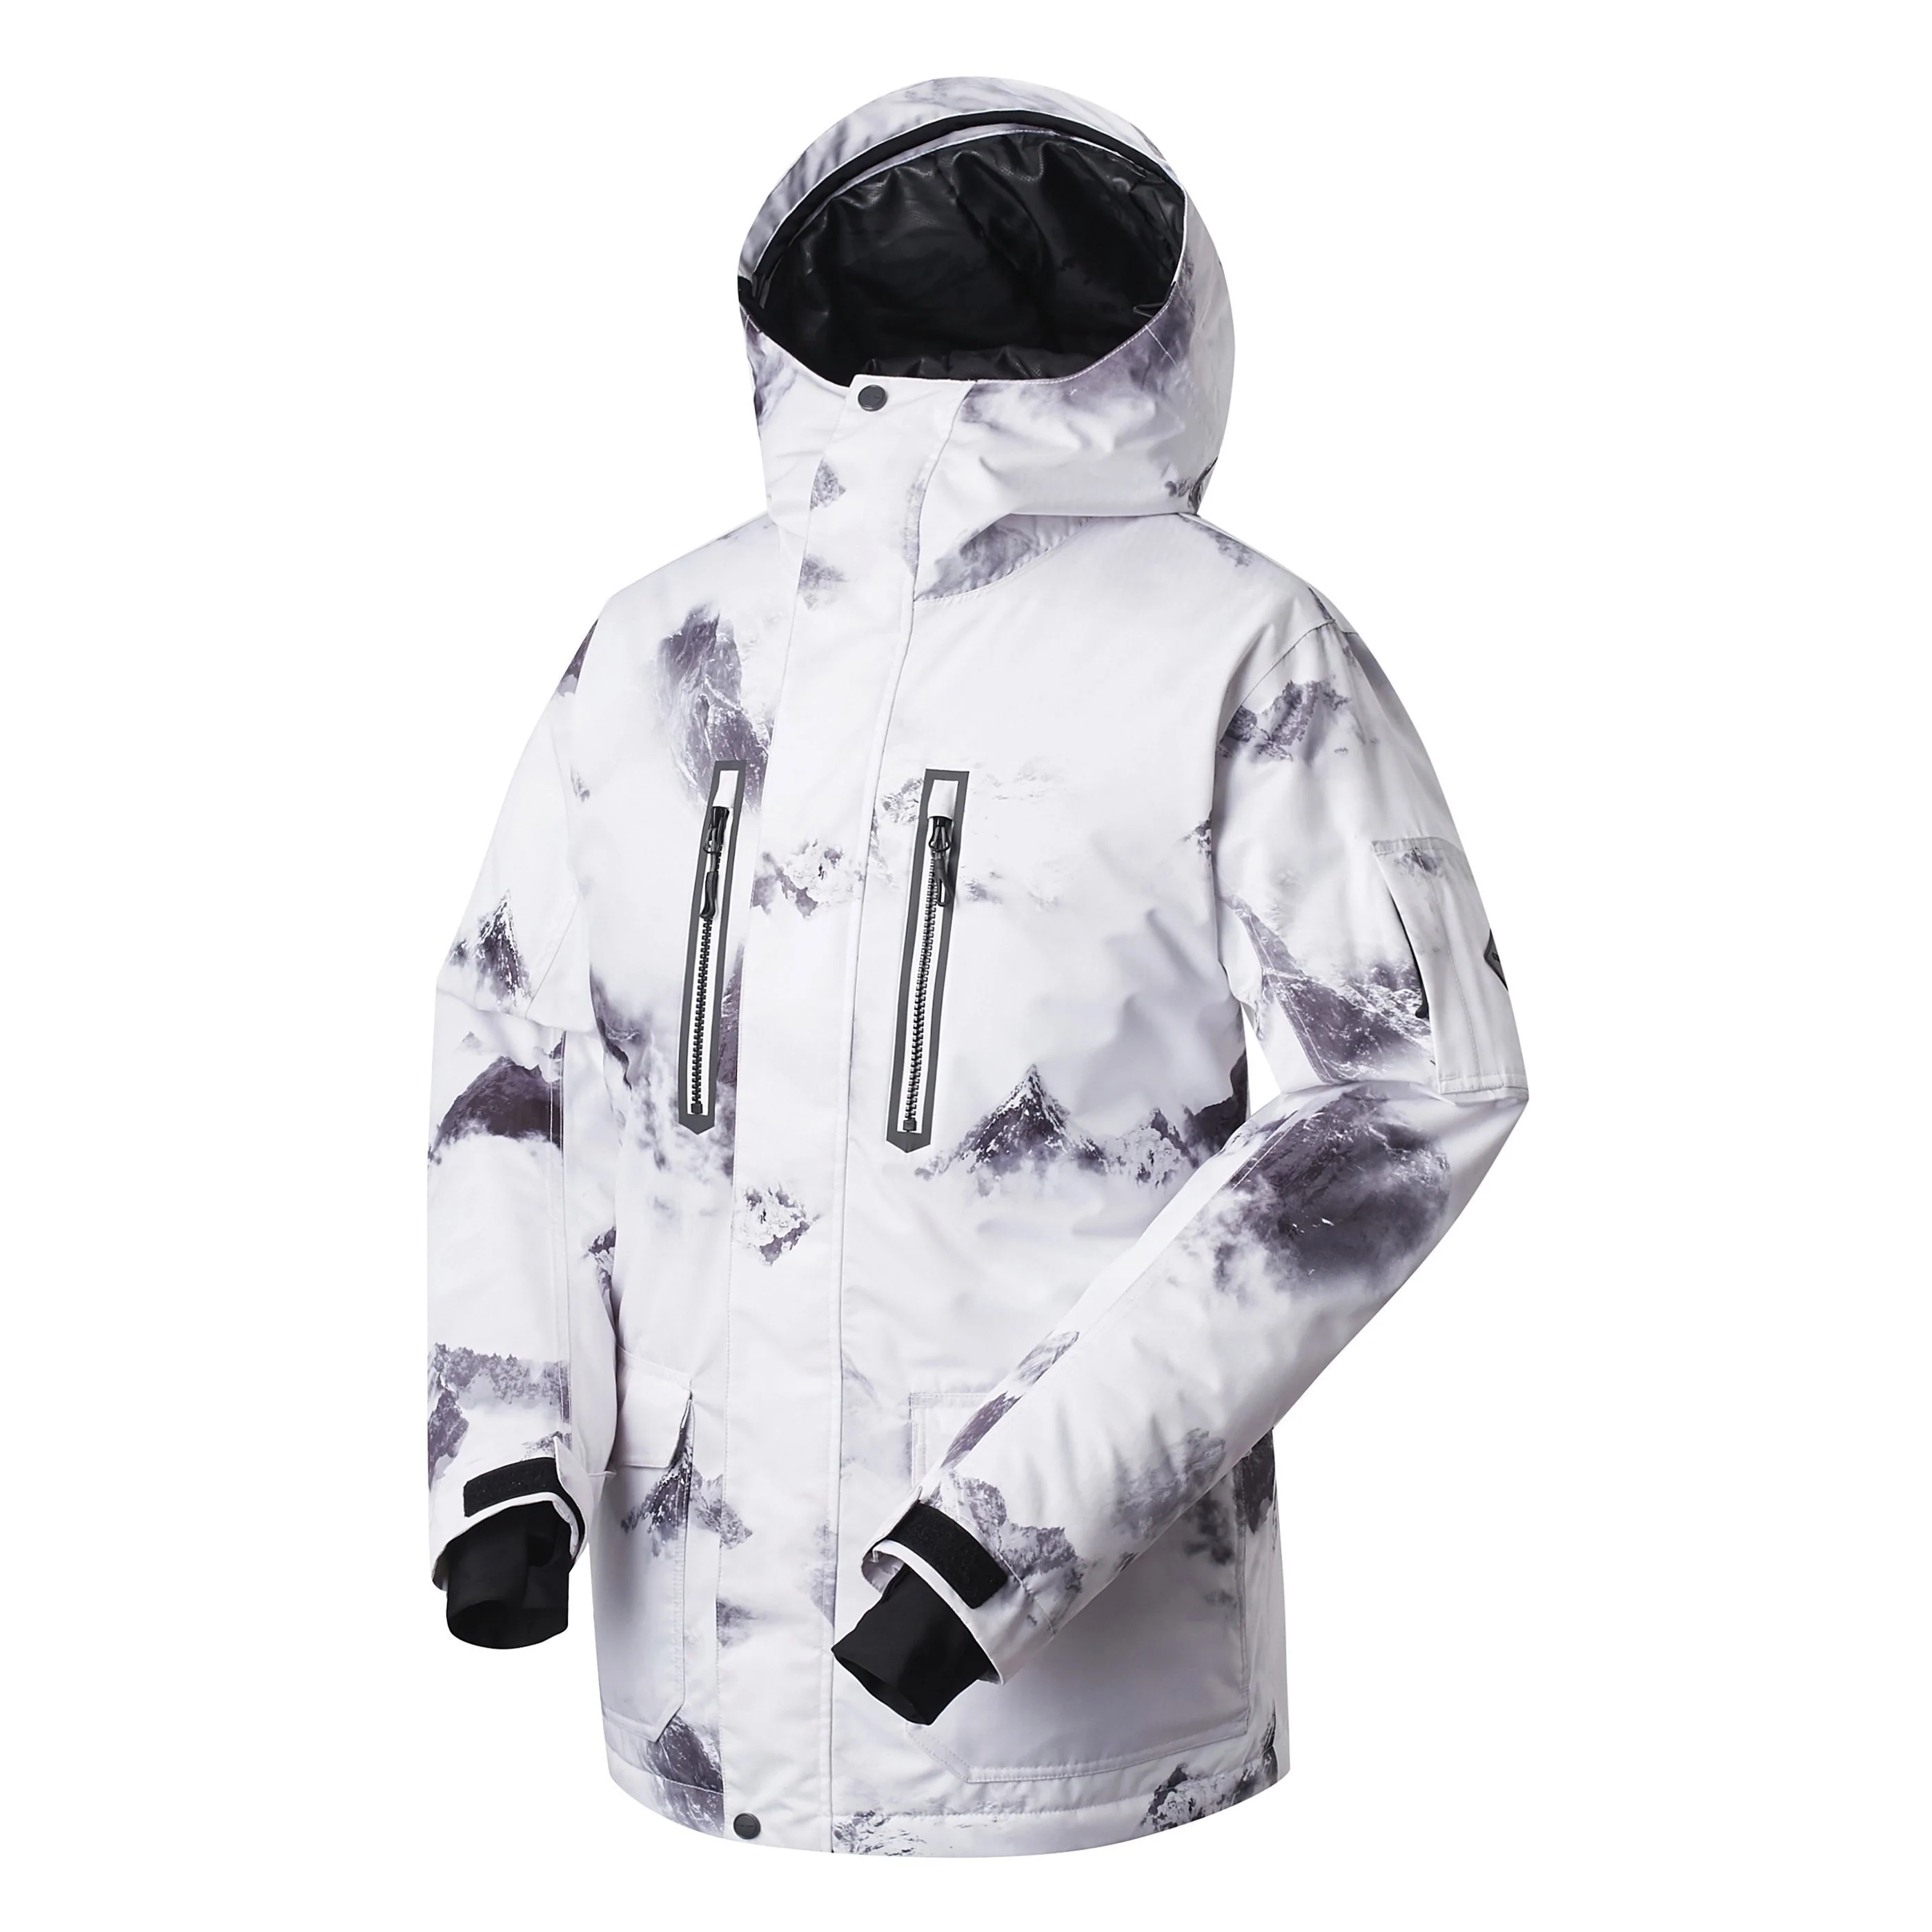 MARKERWAY Men's Outdoor Snowboard Jacket